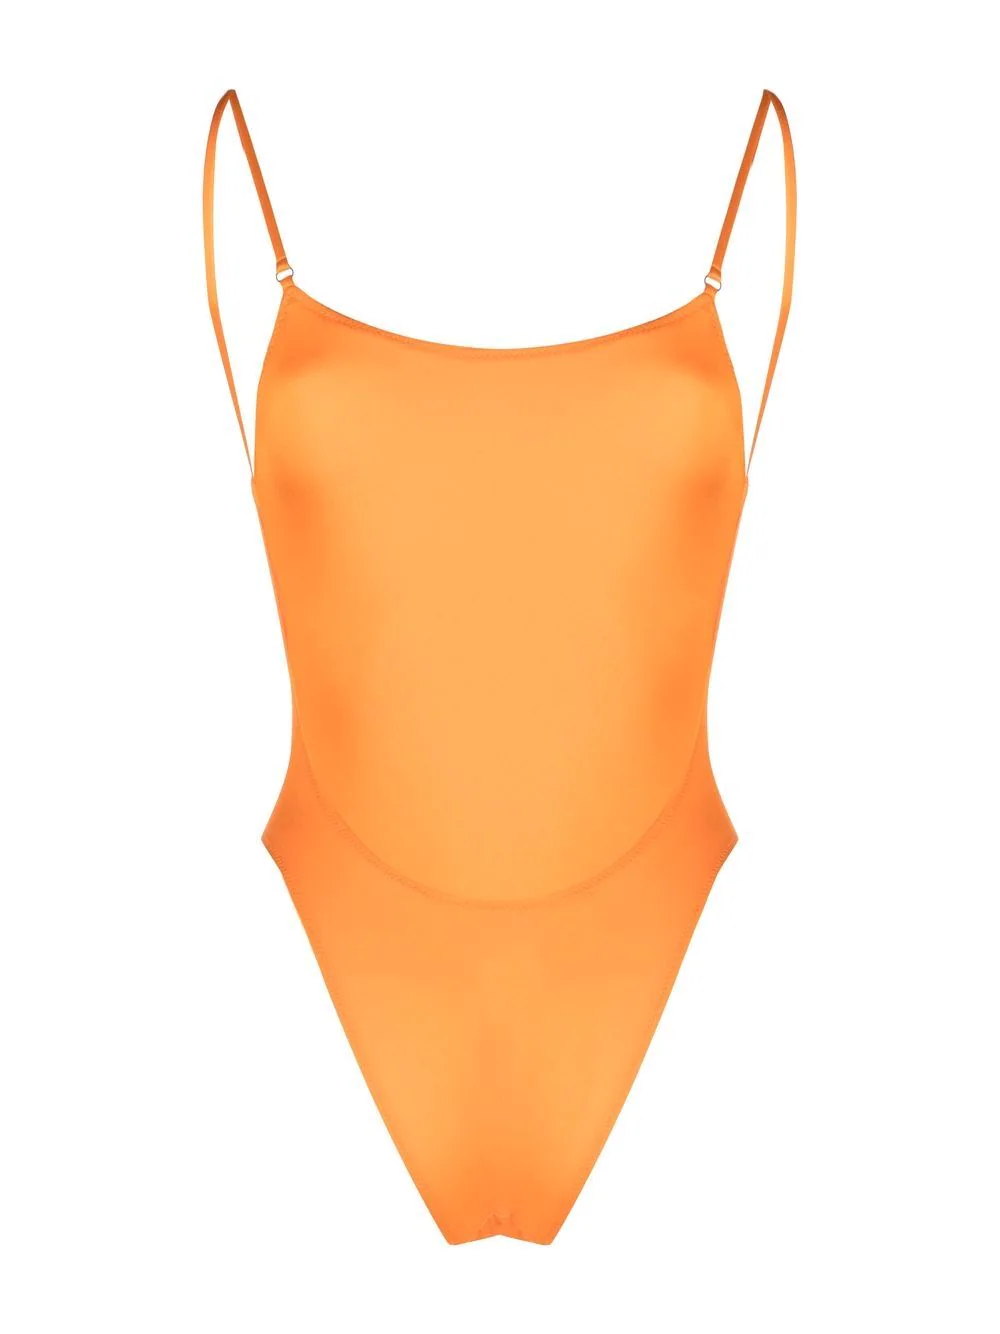 Еще одна идея для пляжного отдыха: купальники с открытой спиной